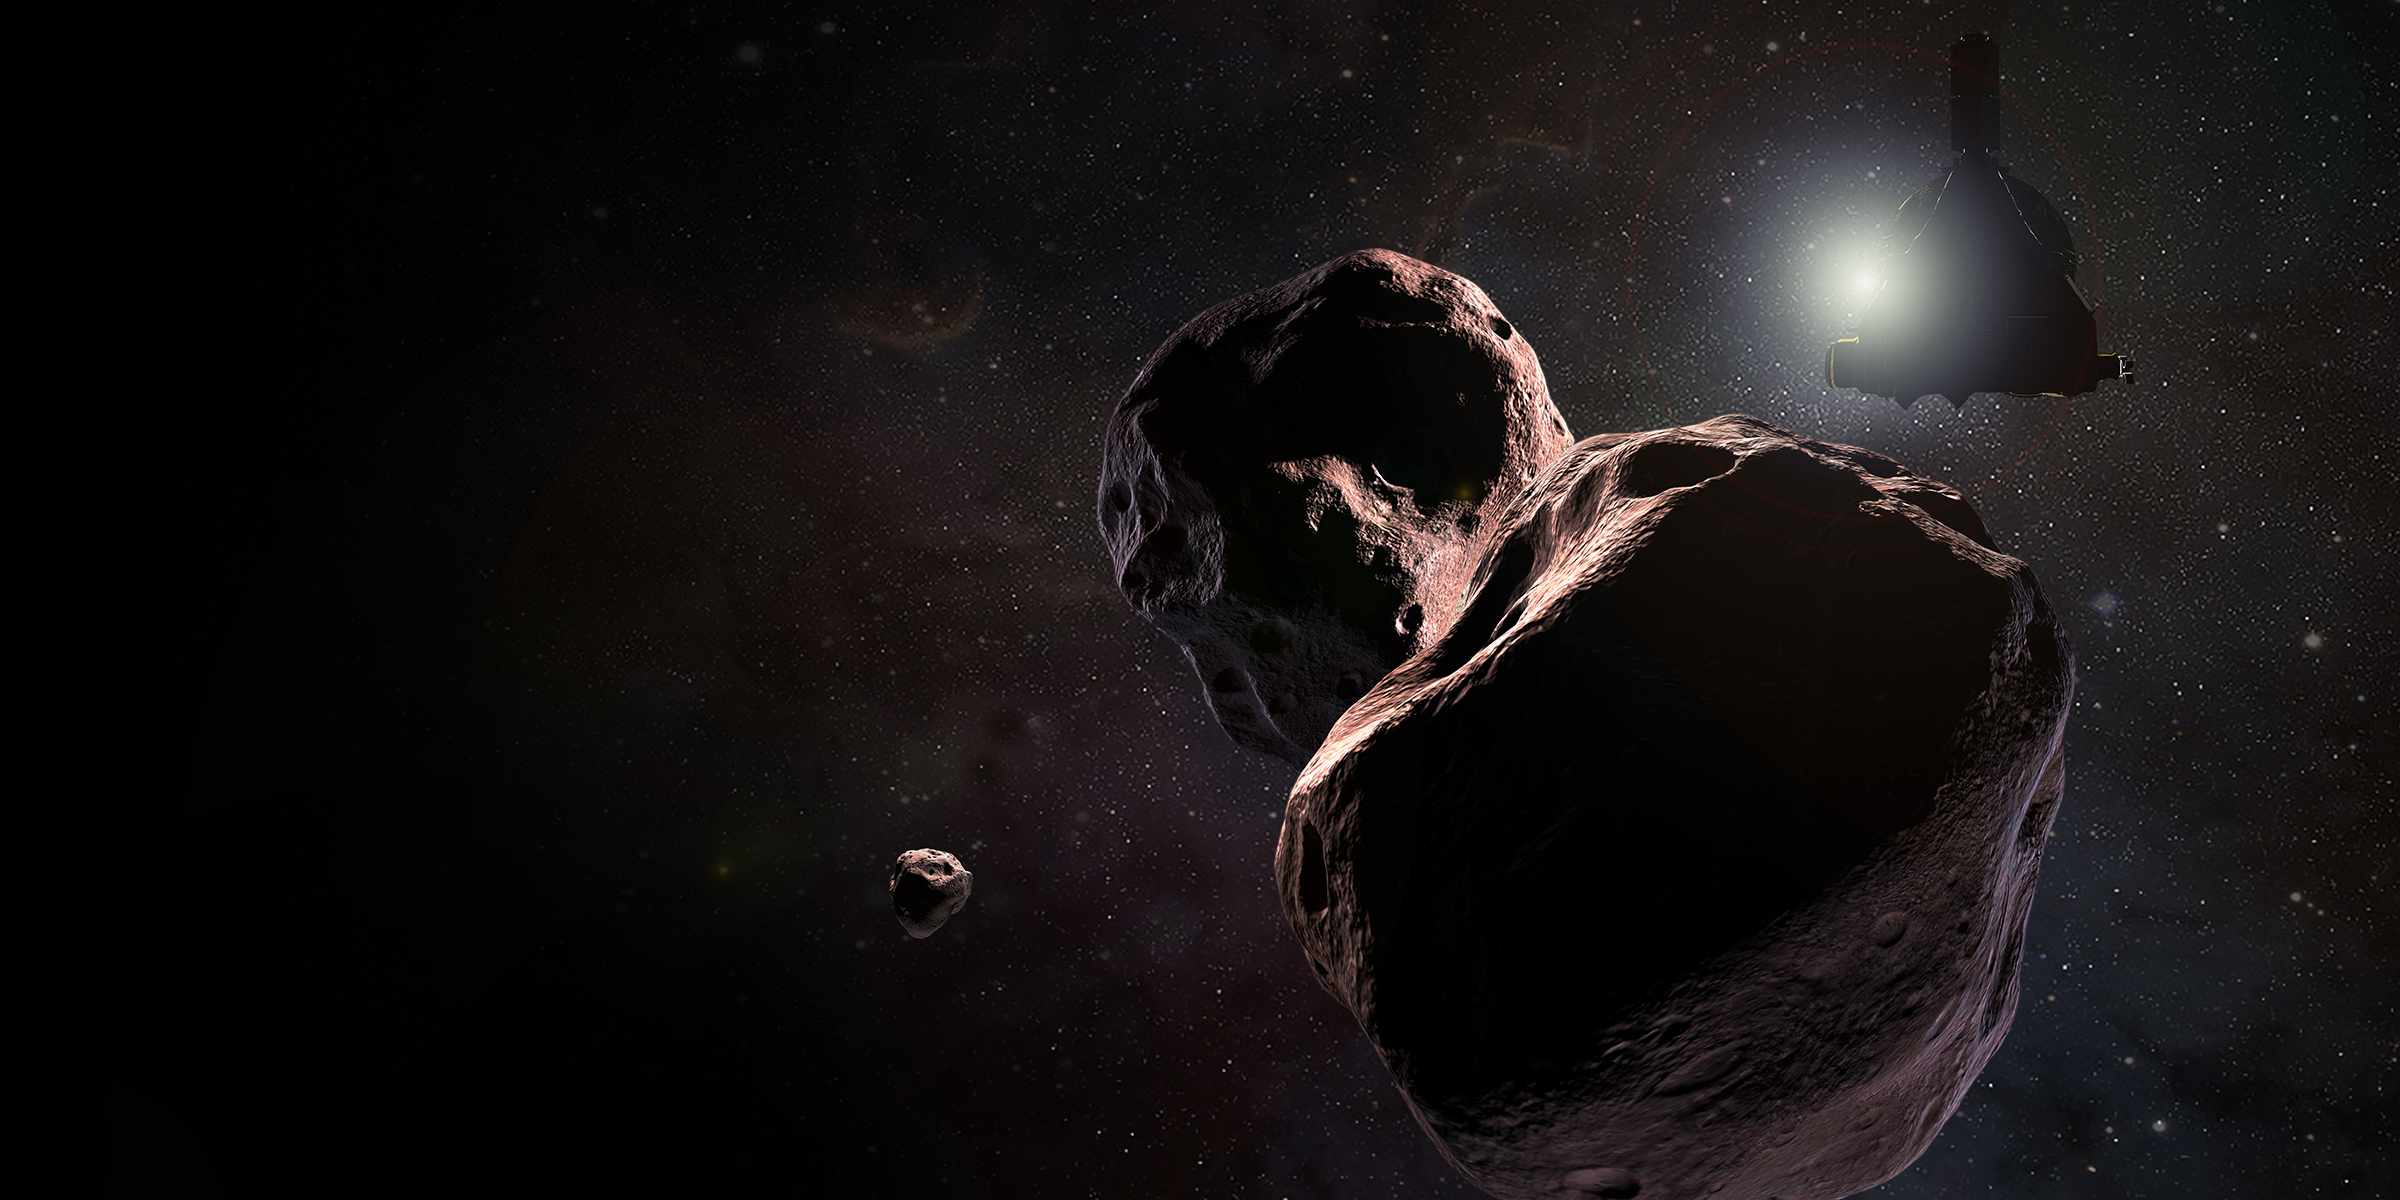 Après Pluton et ses lunes aux portes de la ceinture de Kuiper, New Horizons va survoler 2014 MU69 alias Ultima Thulé, le premier janvier 2019. © Johns Hopkins University Applied Physics Laboratory (JHUAPL), Southwest Research Institute (SwRI)